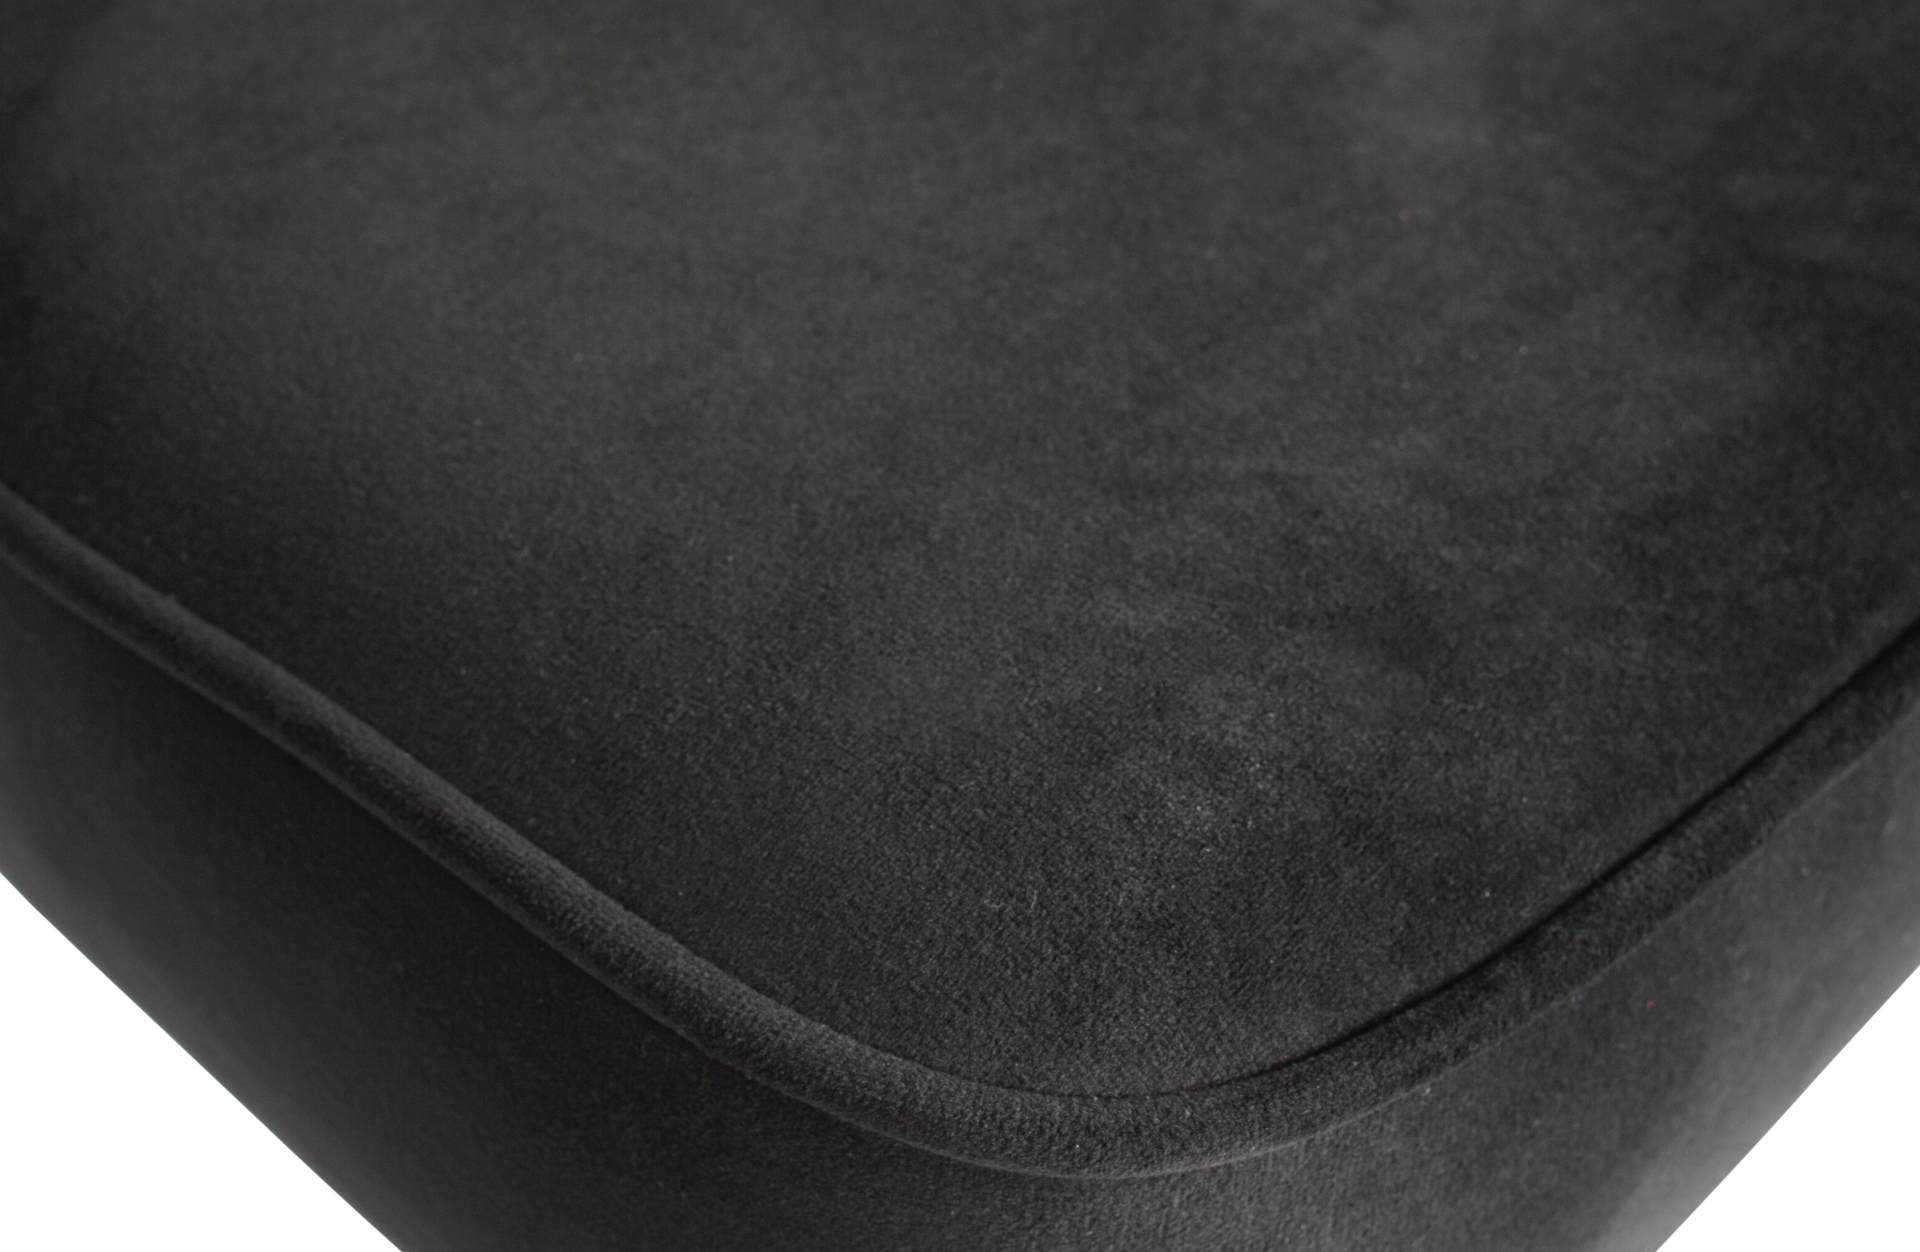 Der Barhocker Vogue überzeugt mit seinem modernen Design. Gefertigt wurde er aus Samt, welches einen schwarzen Farbton besitzt. Das Gestell ist aus Metall und hat eine schwarze Farbe. Der Barhocker verfügt über eine Sitzhöhe von 79 cm.